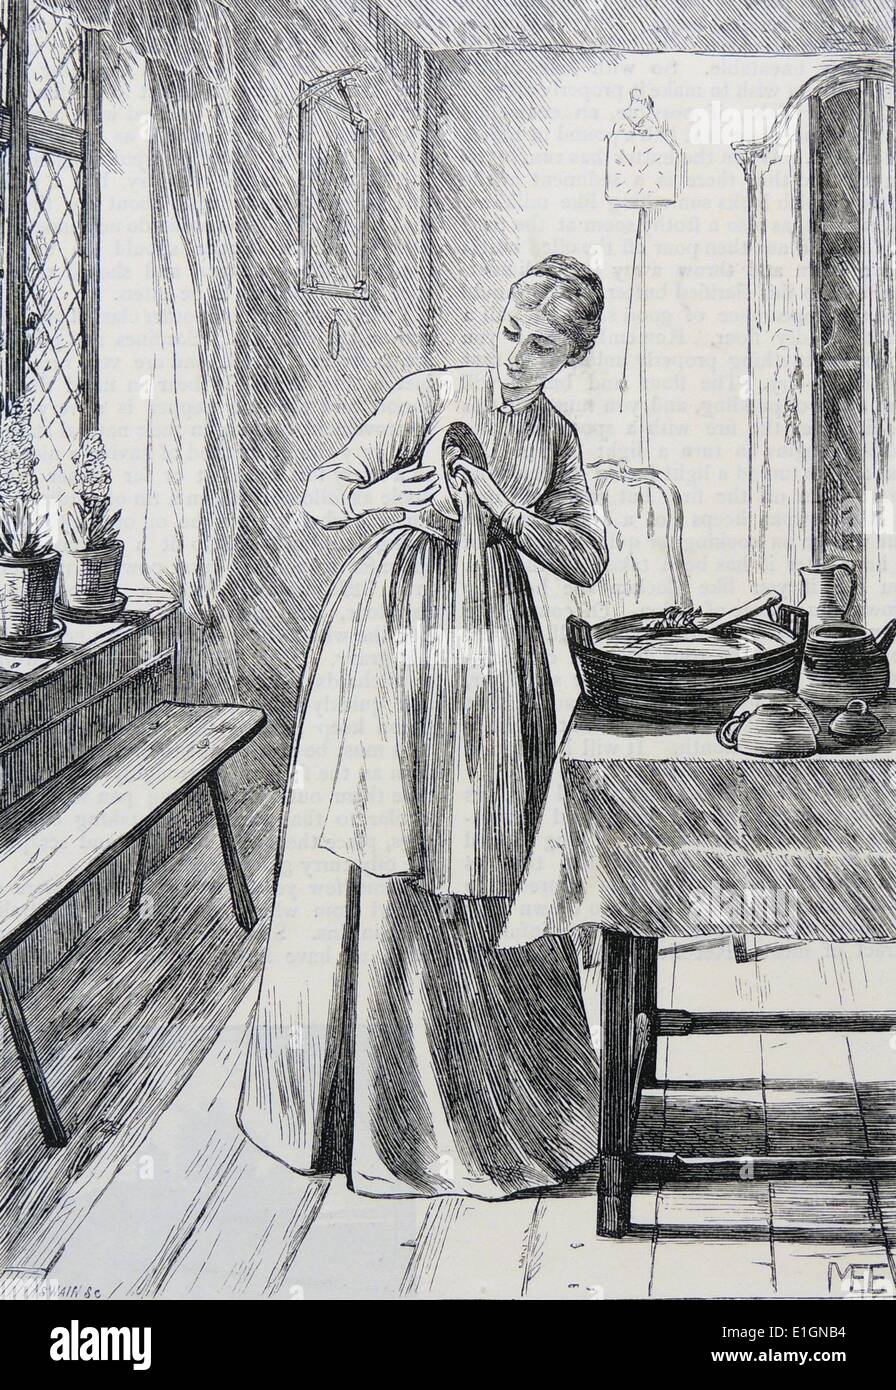 Hausfrau, waschen und trocknen das Geschirr. Illustration von Mary Ellen Edwards, London, 1886. Stockfoto